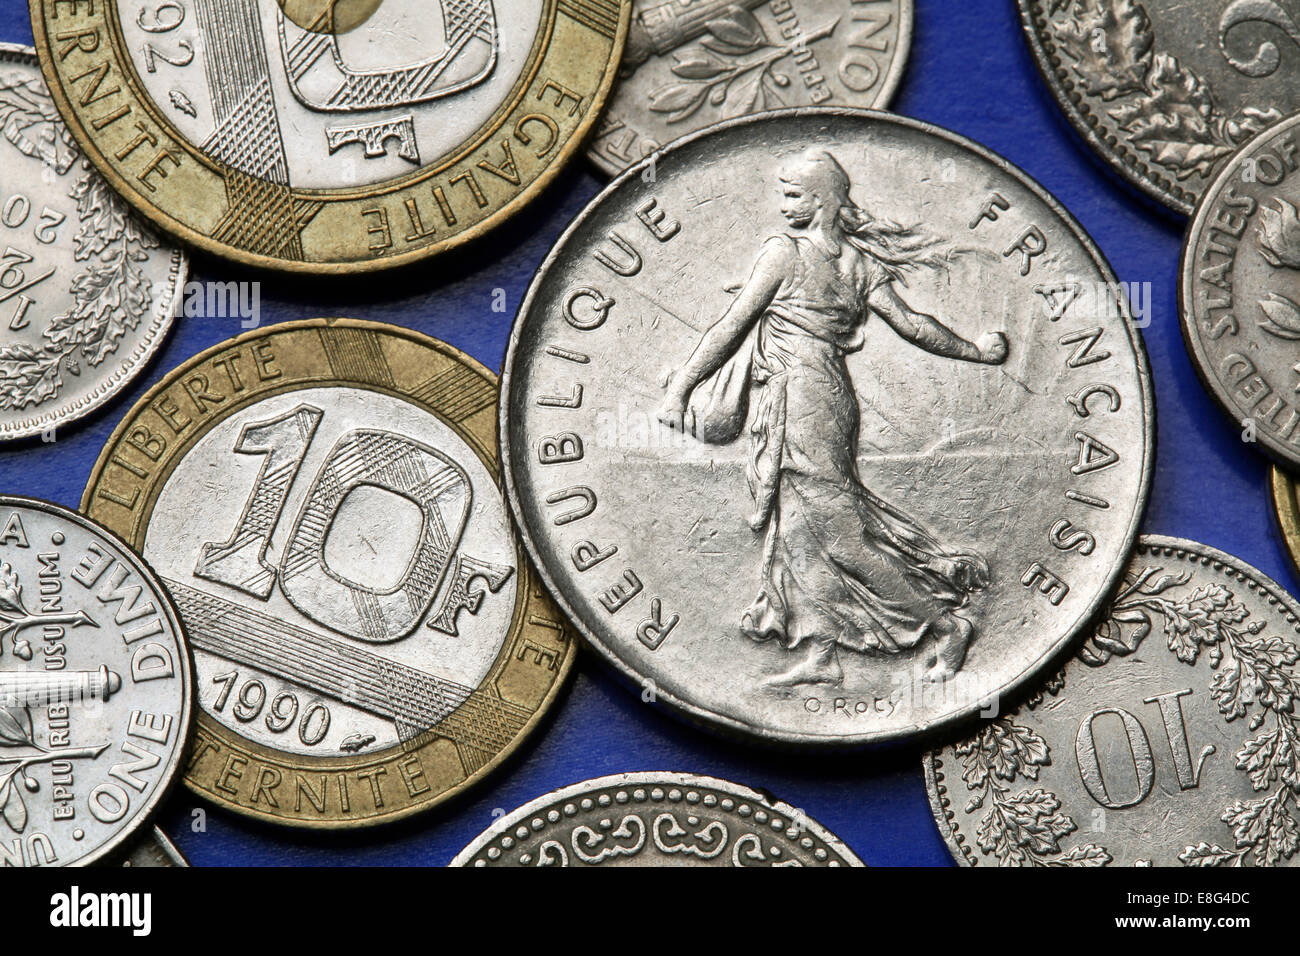 coins de la france le semeur concu par oscar roty decrit par l ancien franc francais cinq pieces de monnaie photo stock alamy